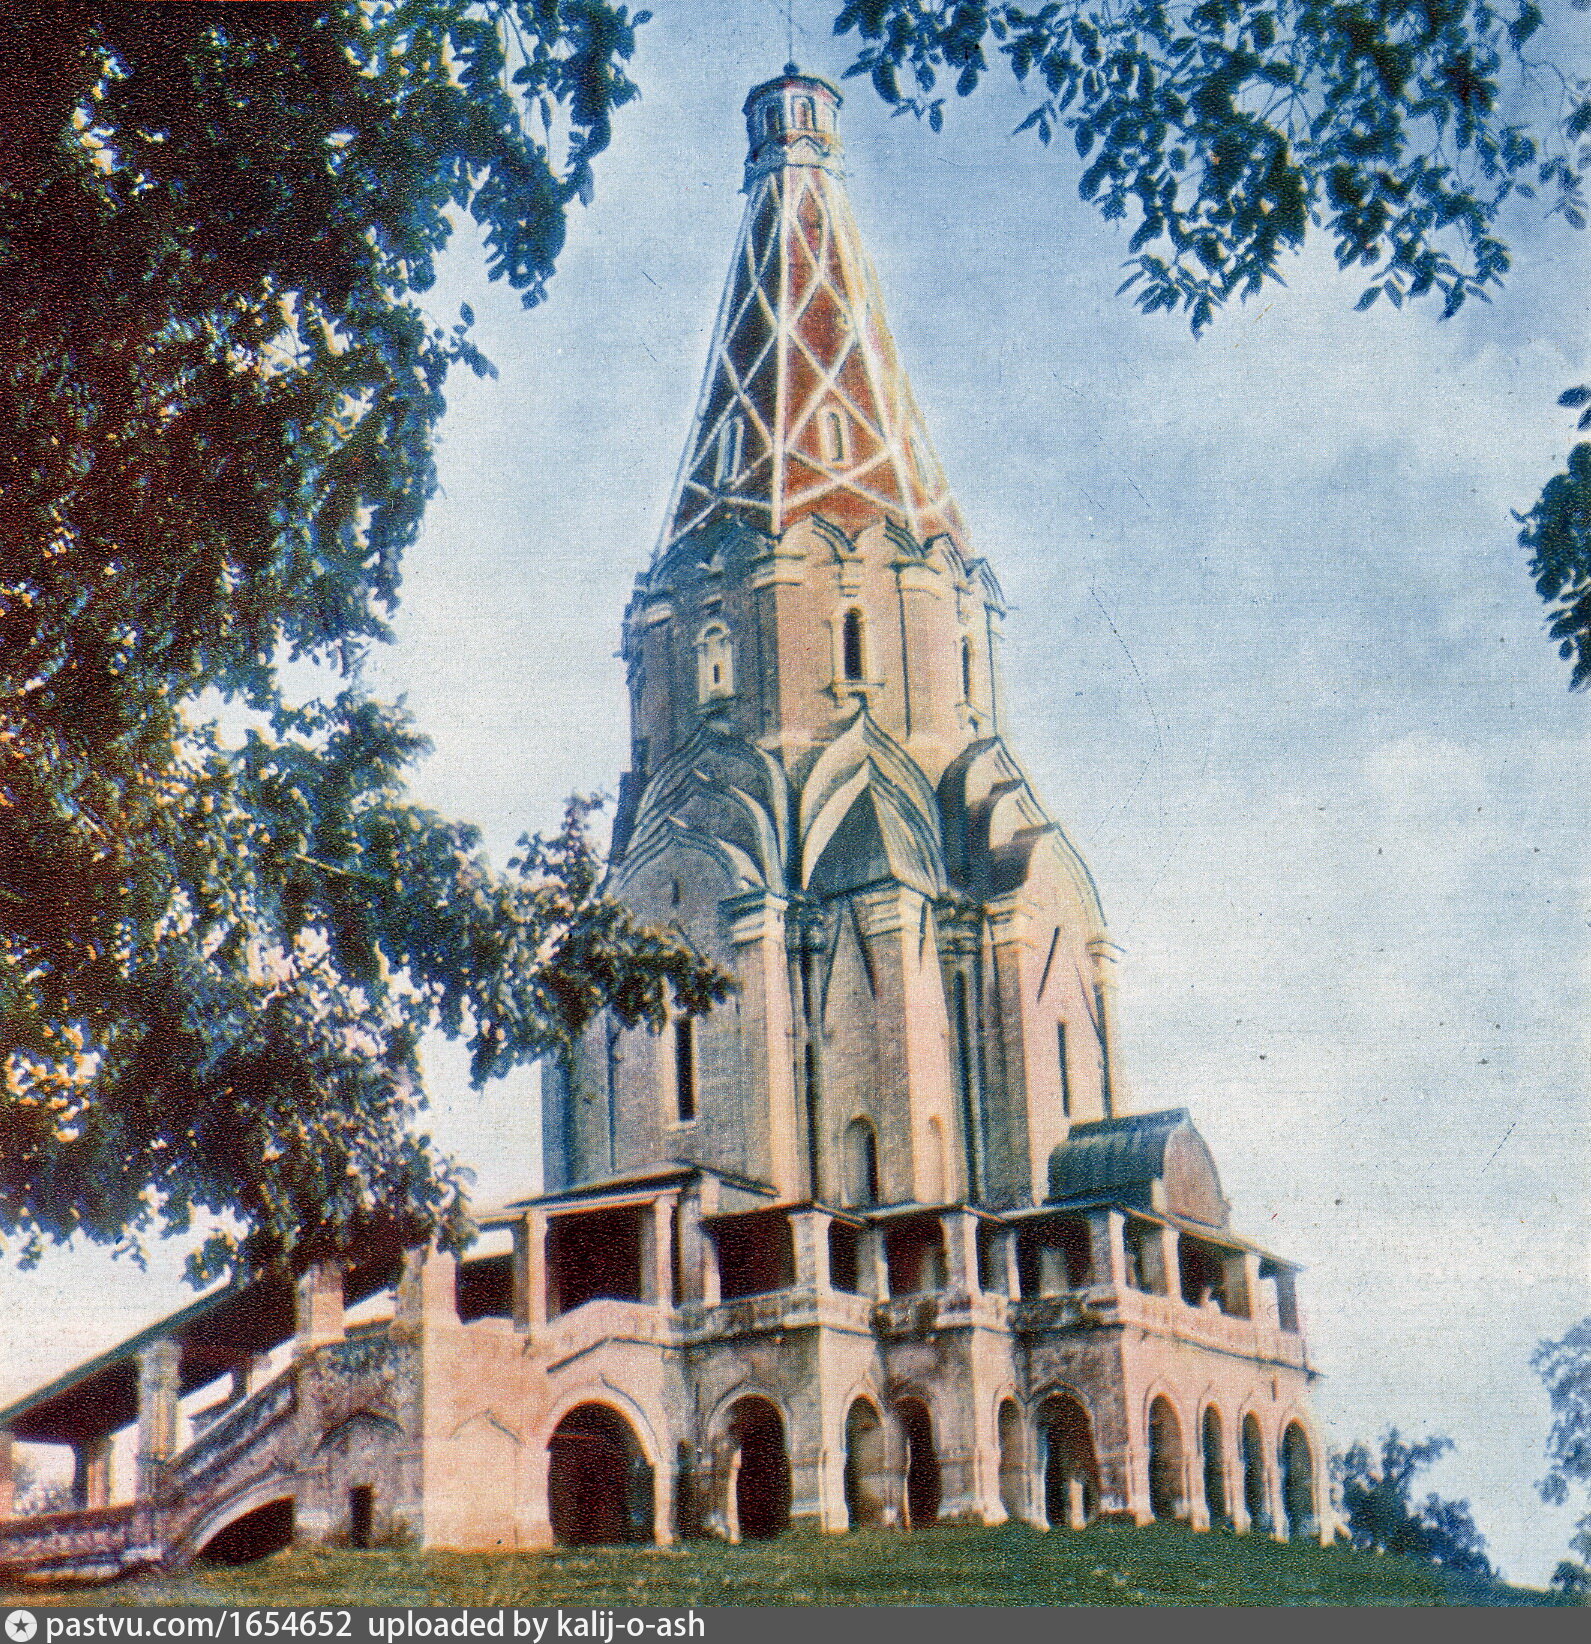 Коломенская церковь в каком веке